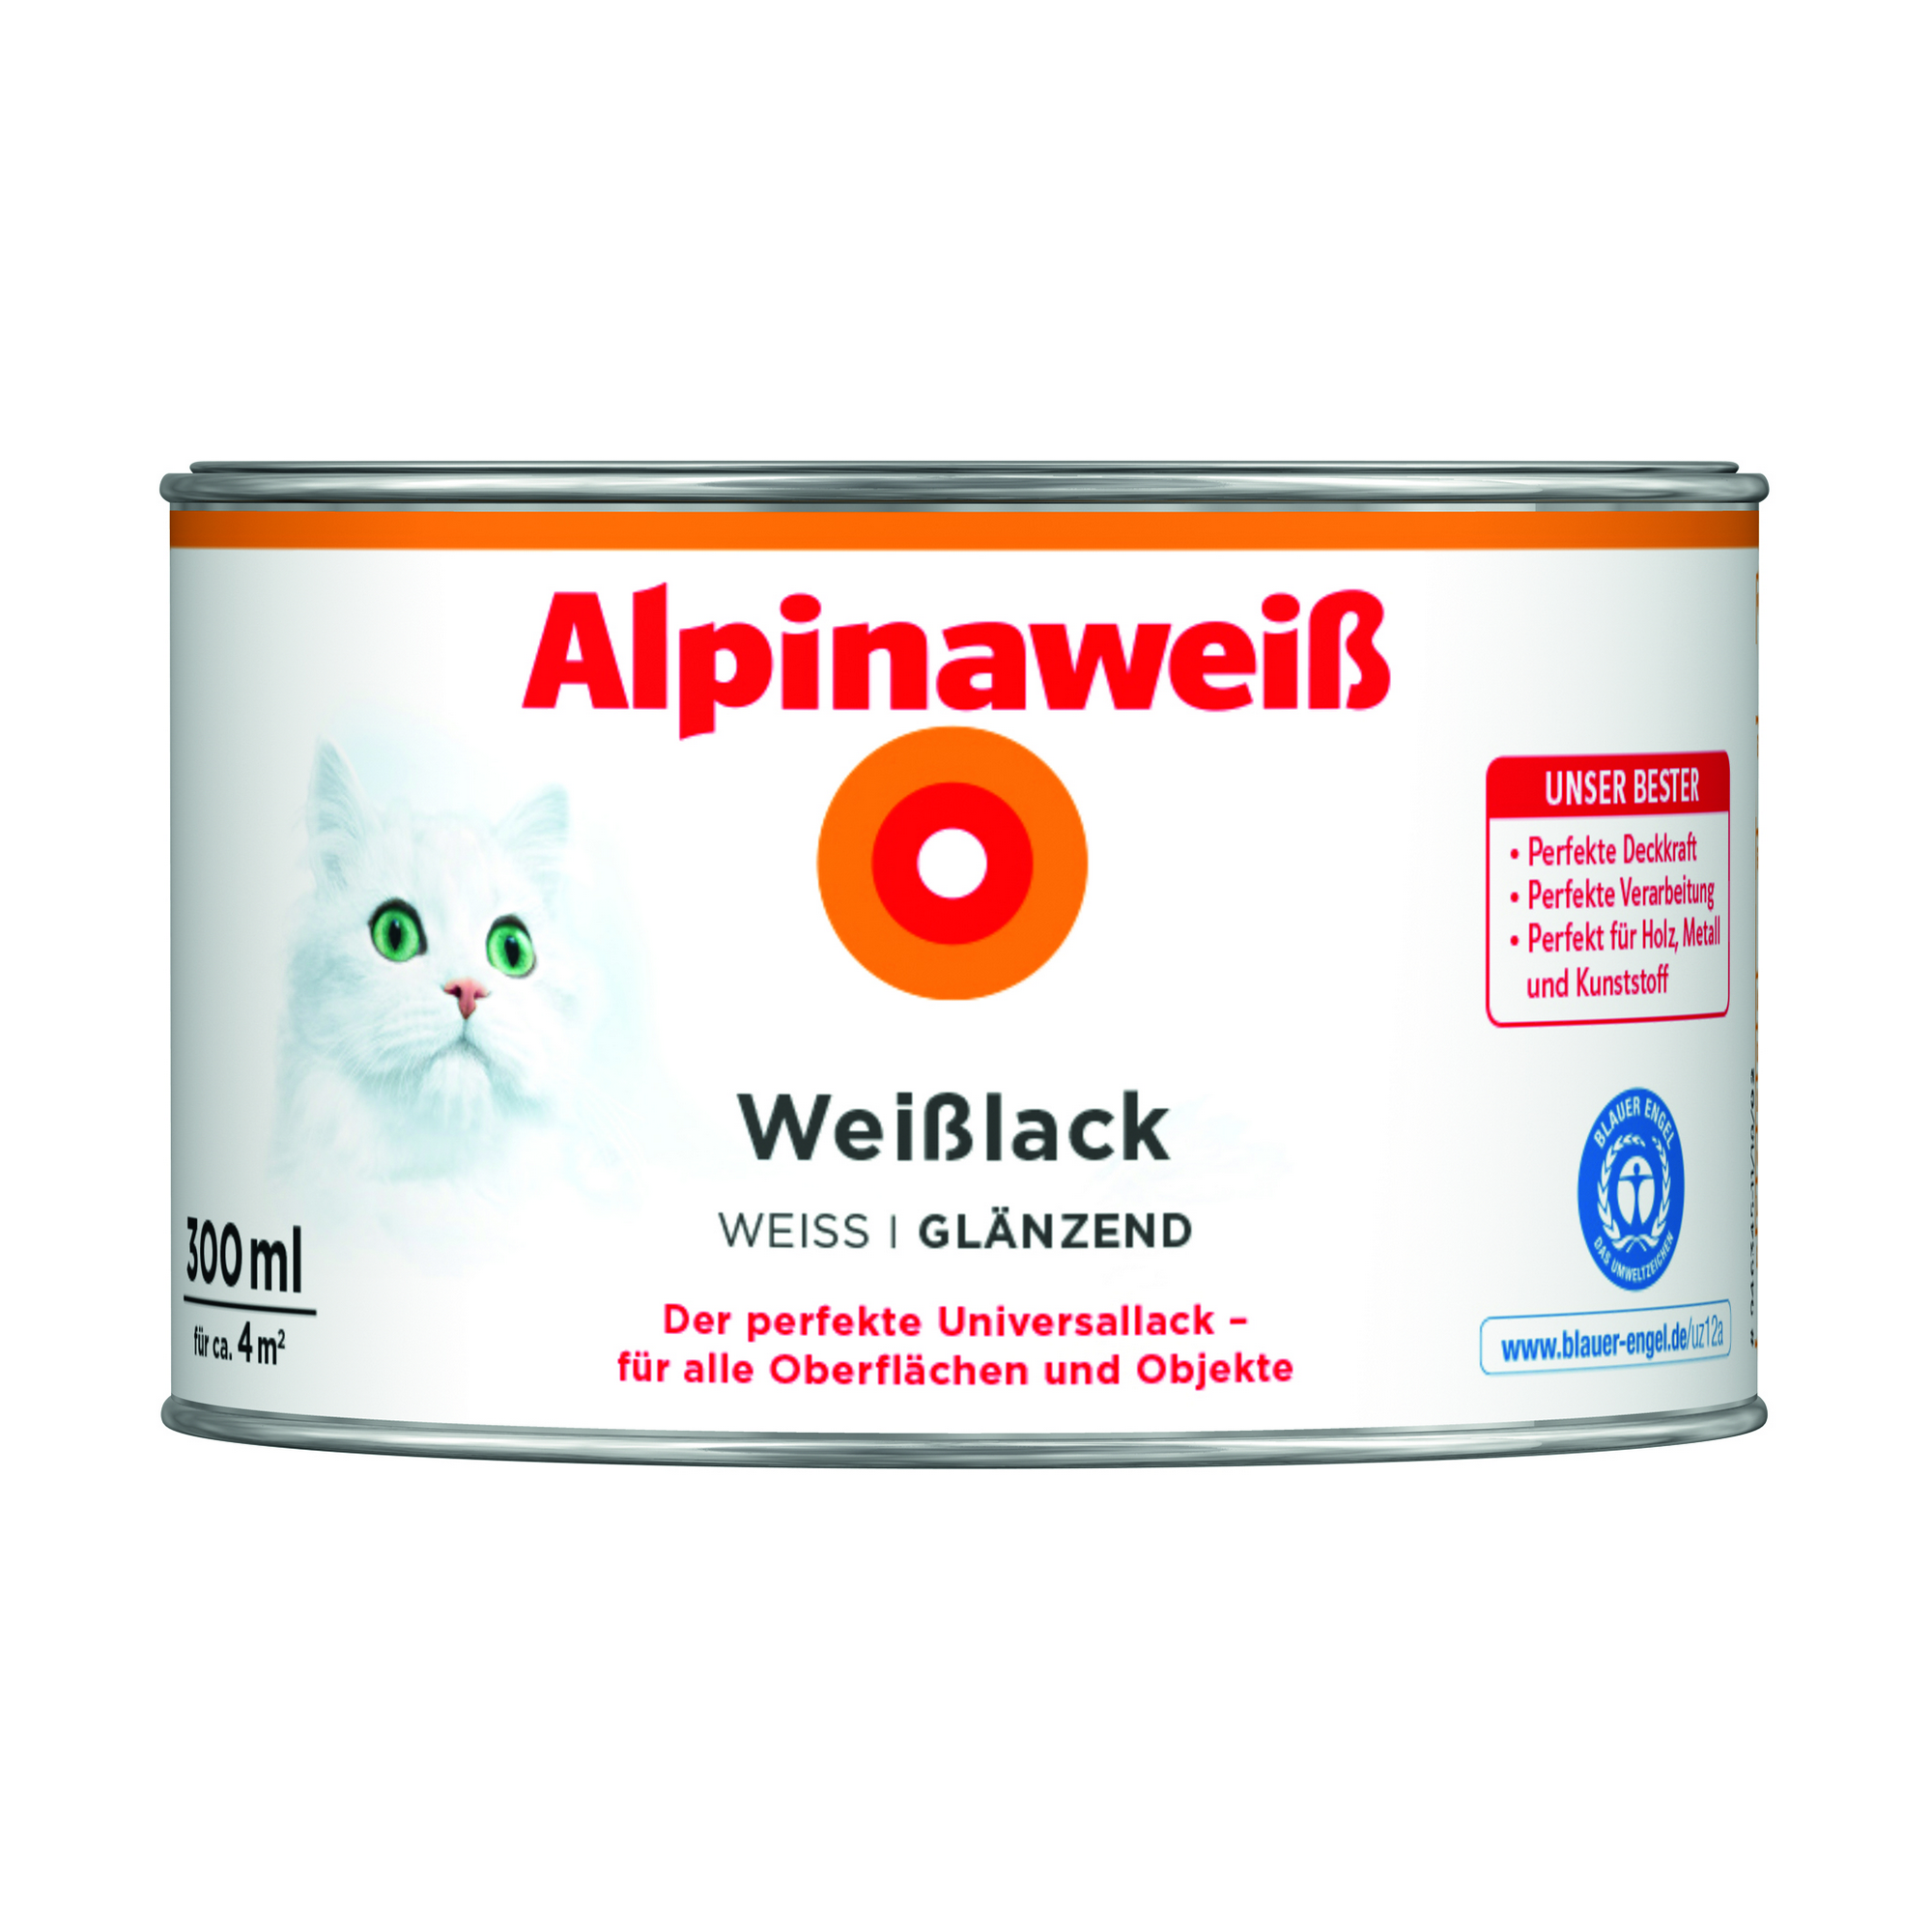 Weißlack 'Alpinaweiß' glänzend 300 ml + product picture